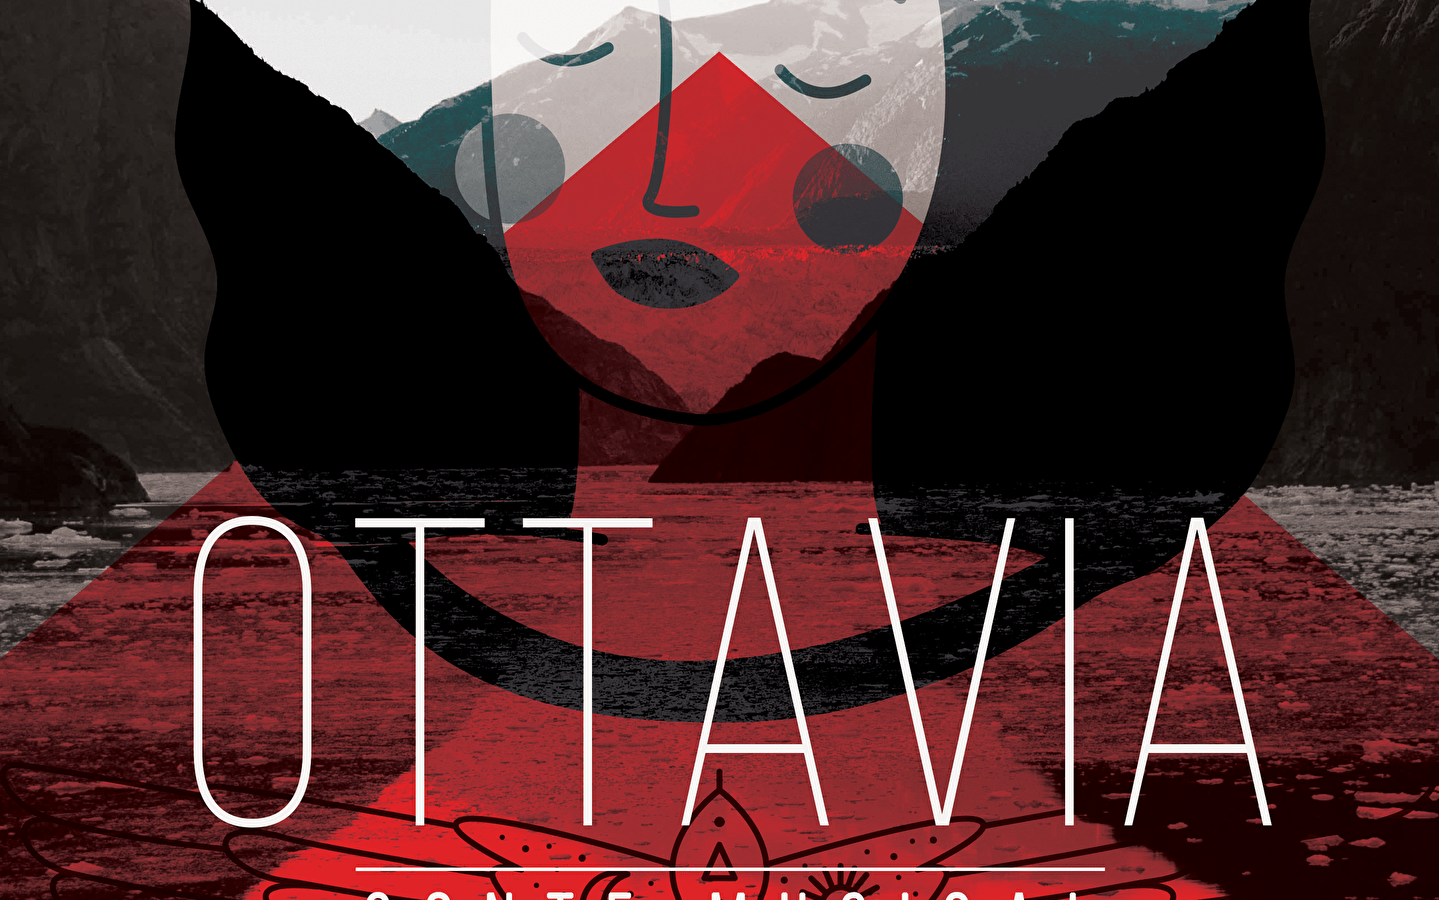 Show - Ottavia